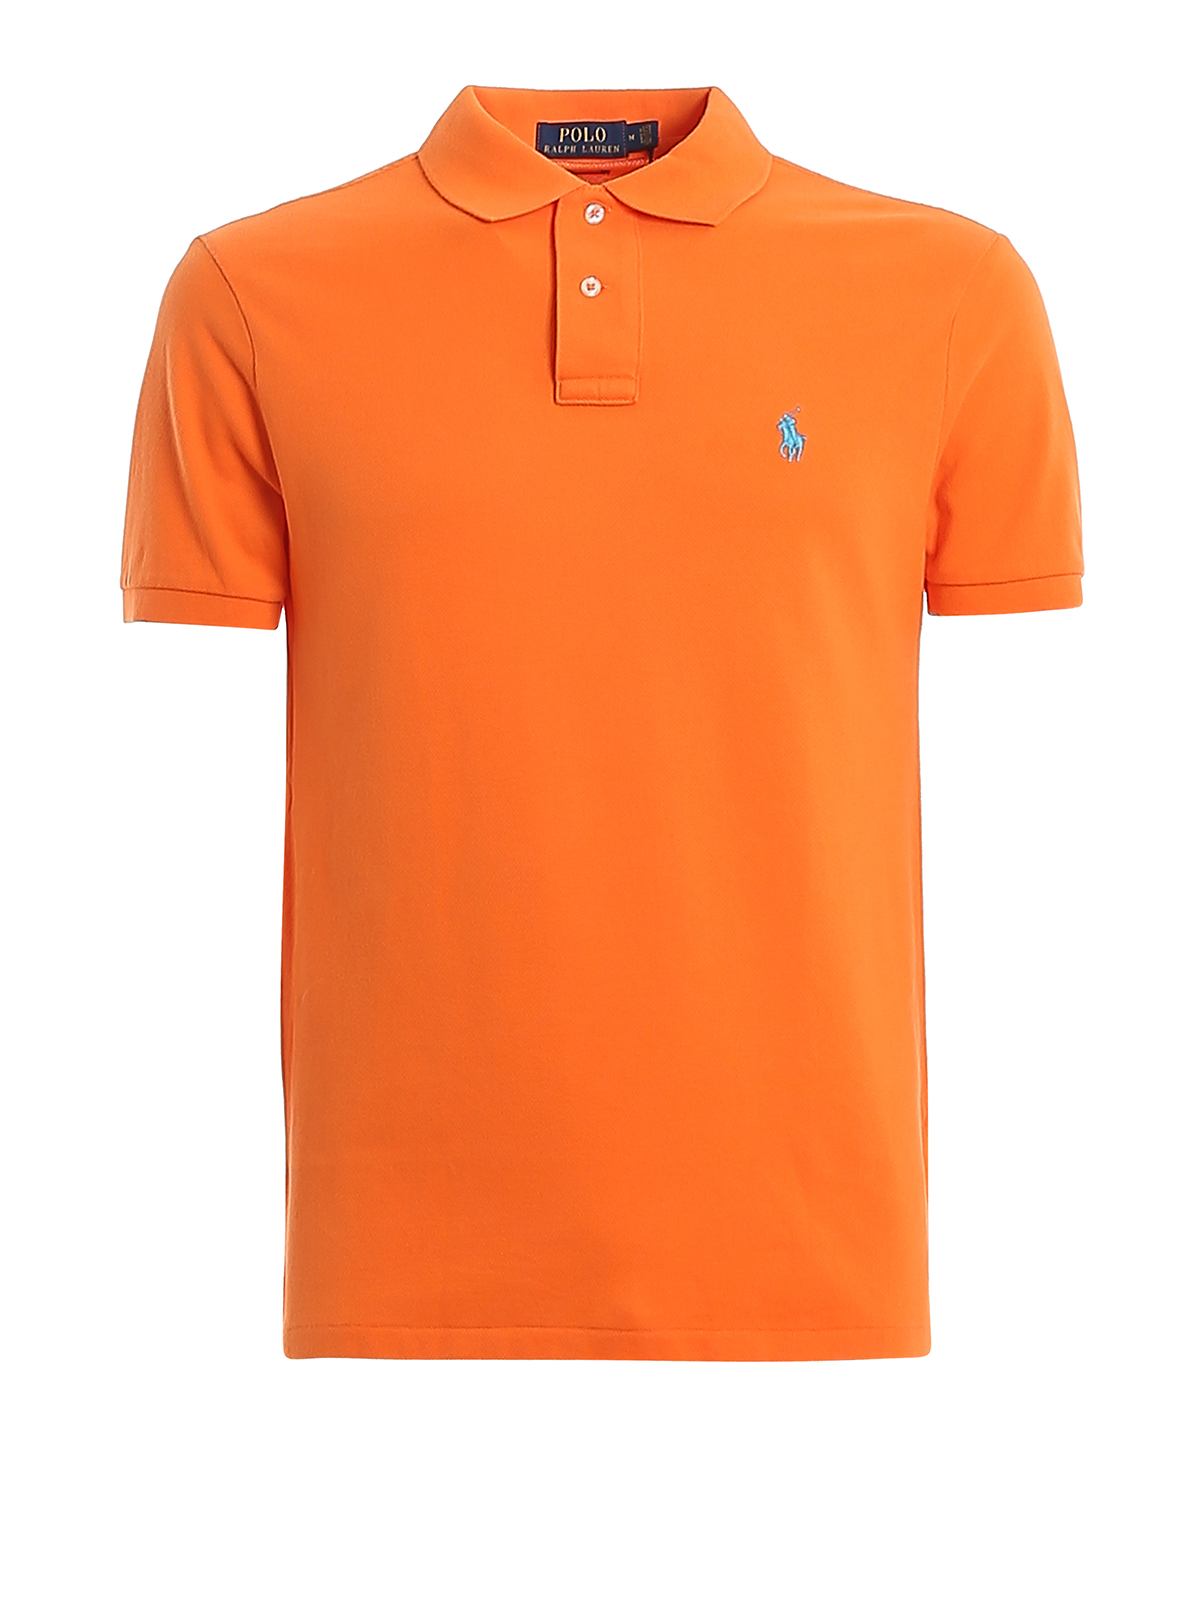 Polo Ralph Lauren Orange Cotton Logo Embroidery Polo Shirt